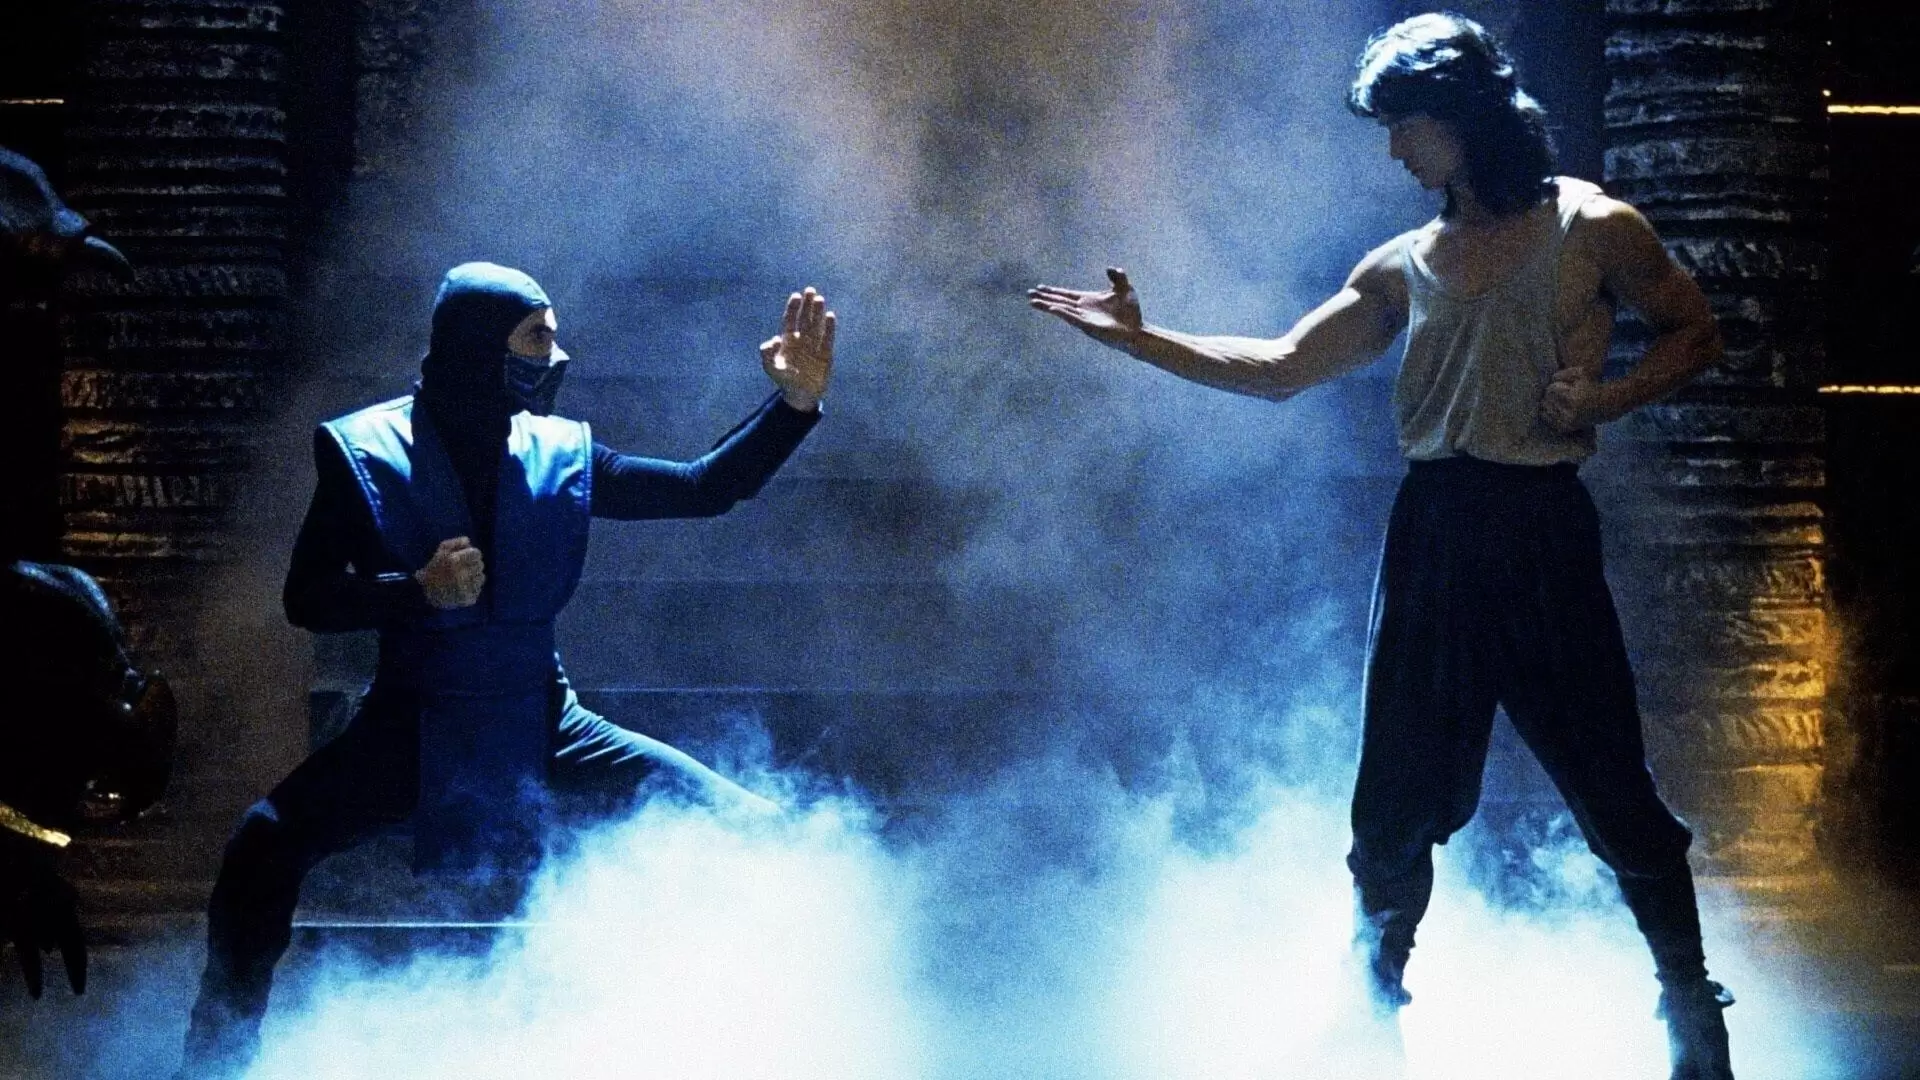 دانلود فیلم Mortal Kombat 1995 (مورتال کامبت) با زیرنویس فارسی